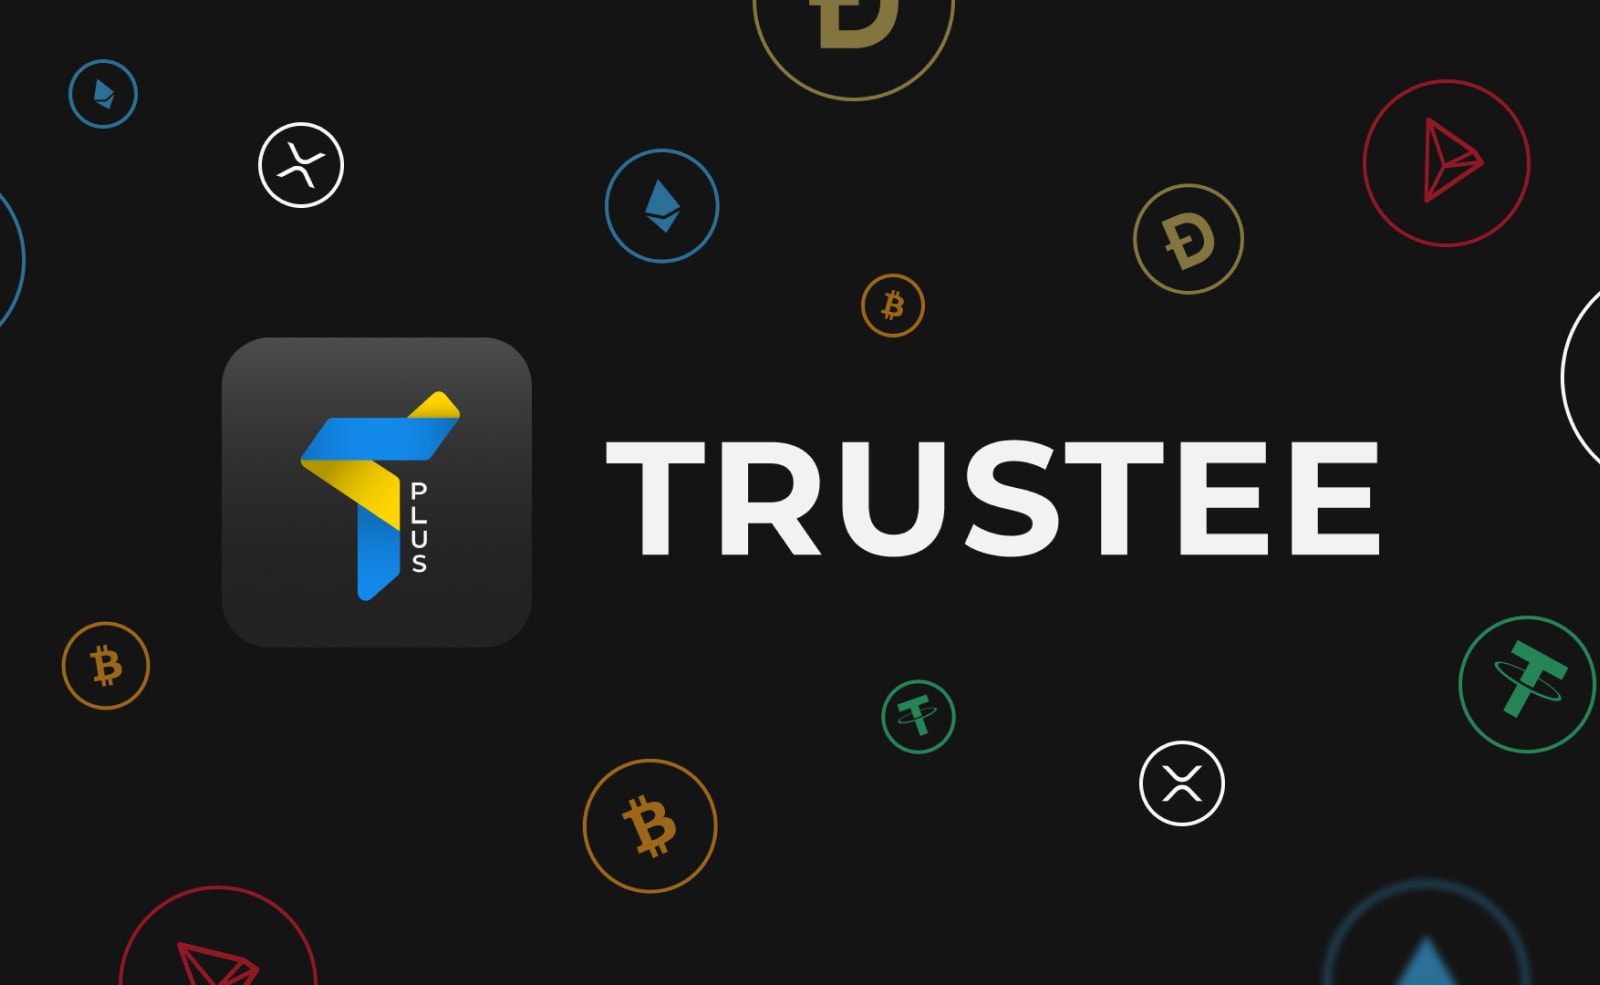 Trustee Plus представив криптокартку Mastercard для безготівкових платежів. Головний колаж новини.